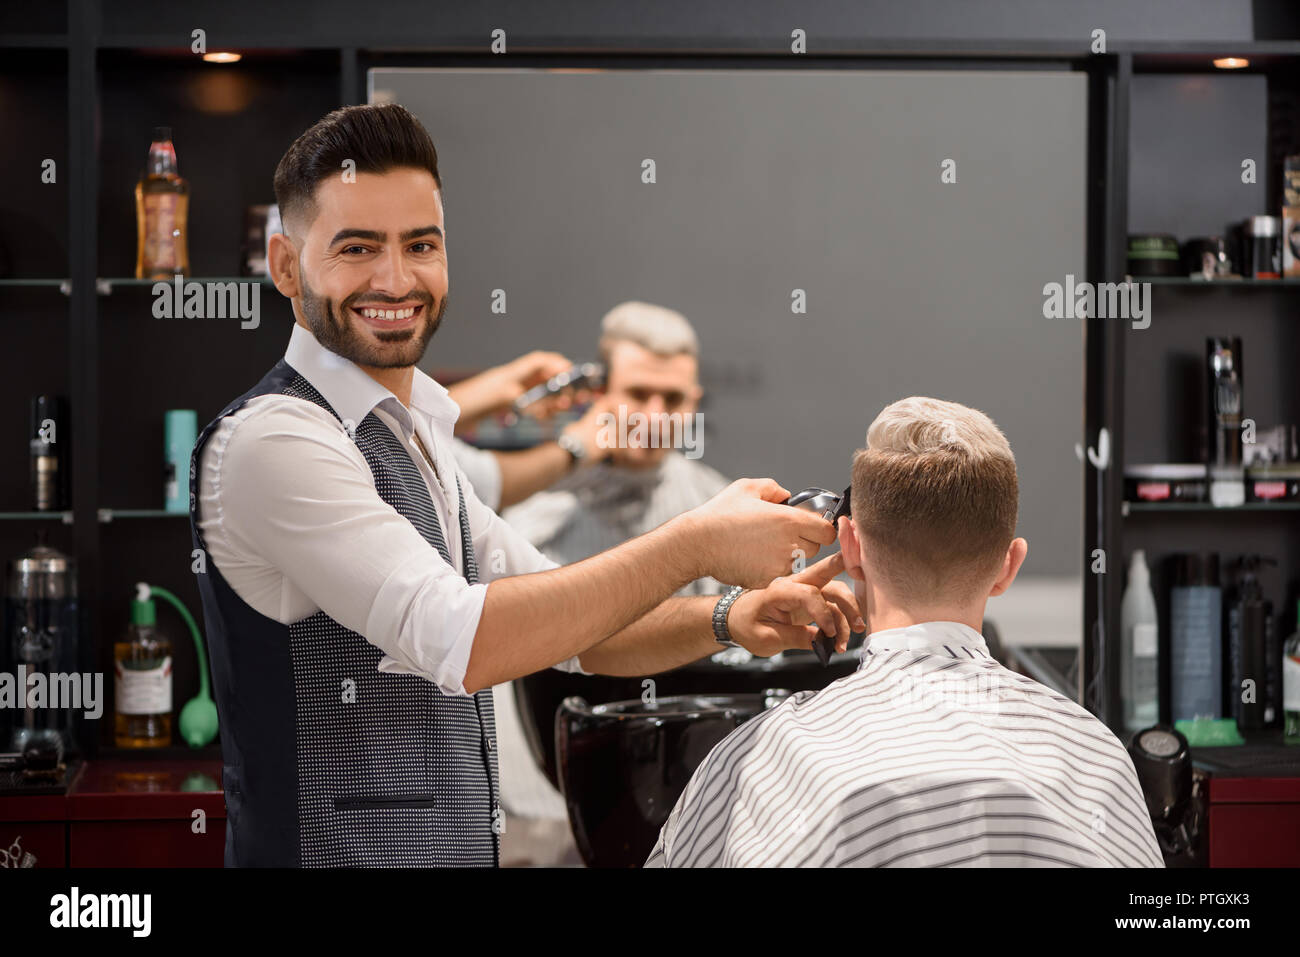 Lächelnd hairstylist arbeiten mit Kunden in Barbershop. Bärtige Friseur an Kamera und Trimmen stilvolle Frisur des jungen Mannes. Reflexion im Spiegel der Client bedeckt mit coiffure Kap. Stockfoto